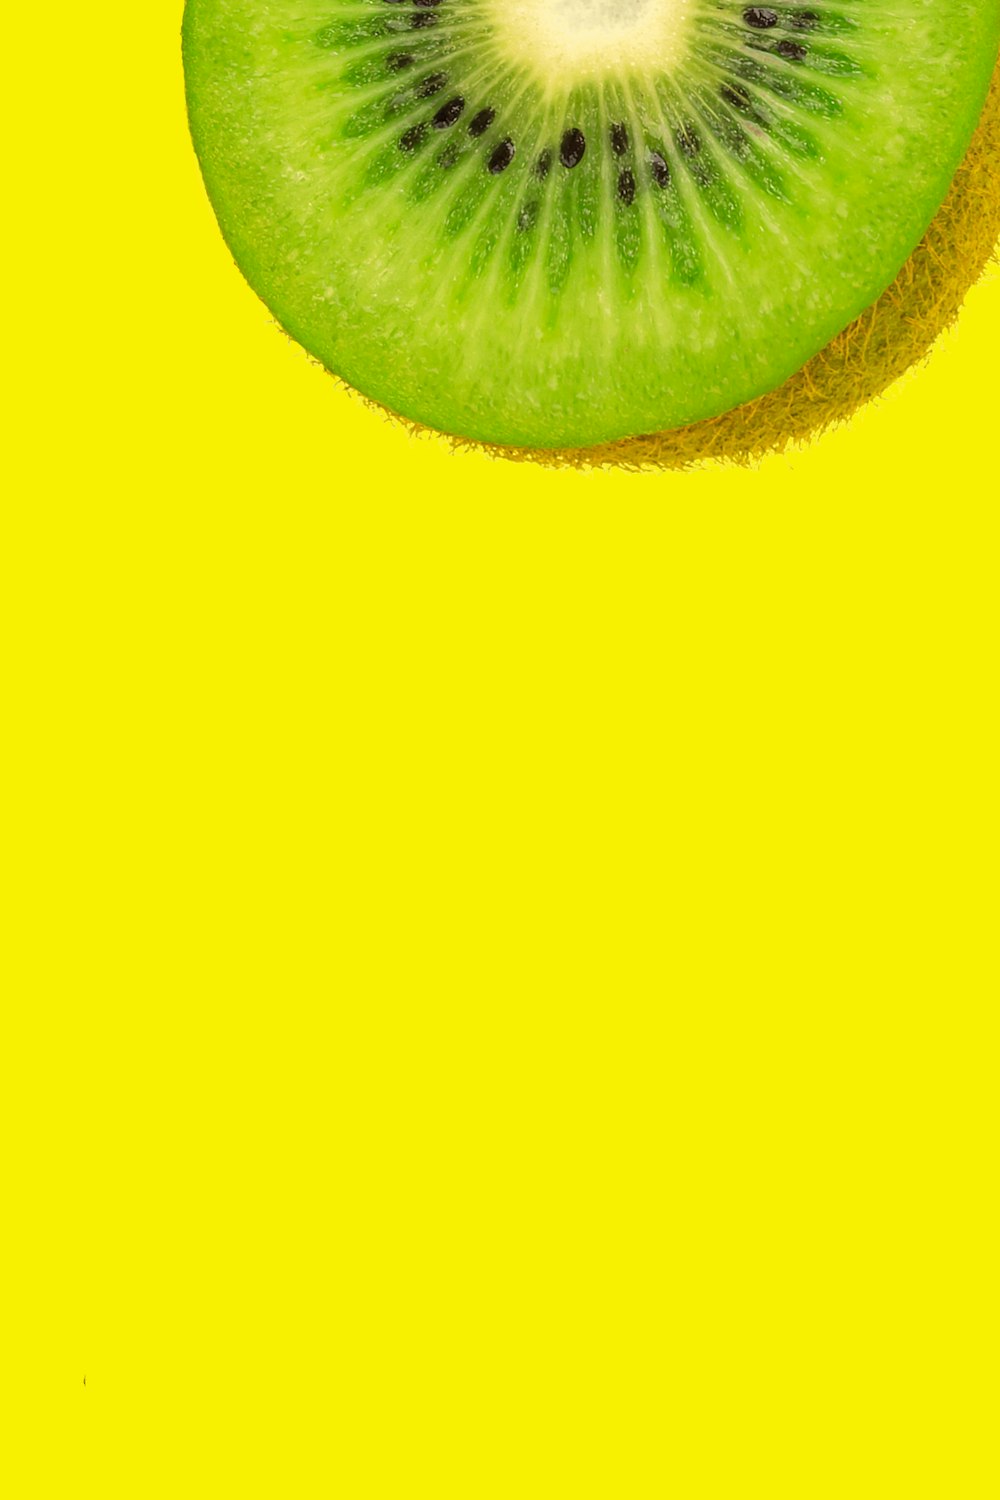 녹색과 흰색 얇게 썬 과일